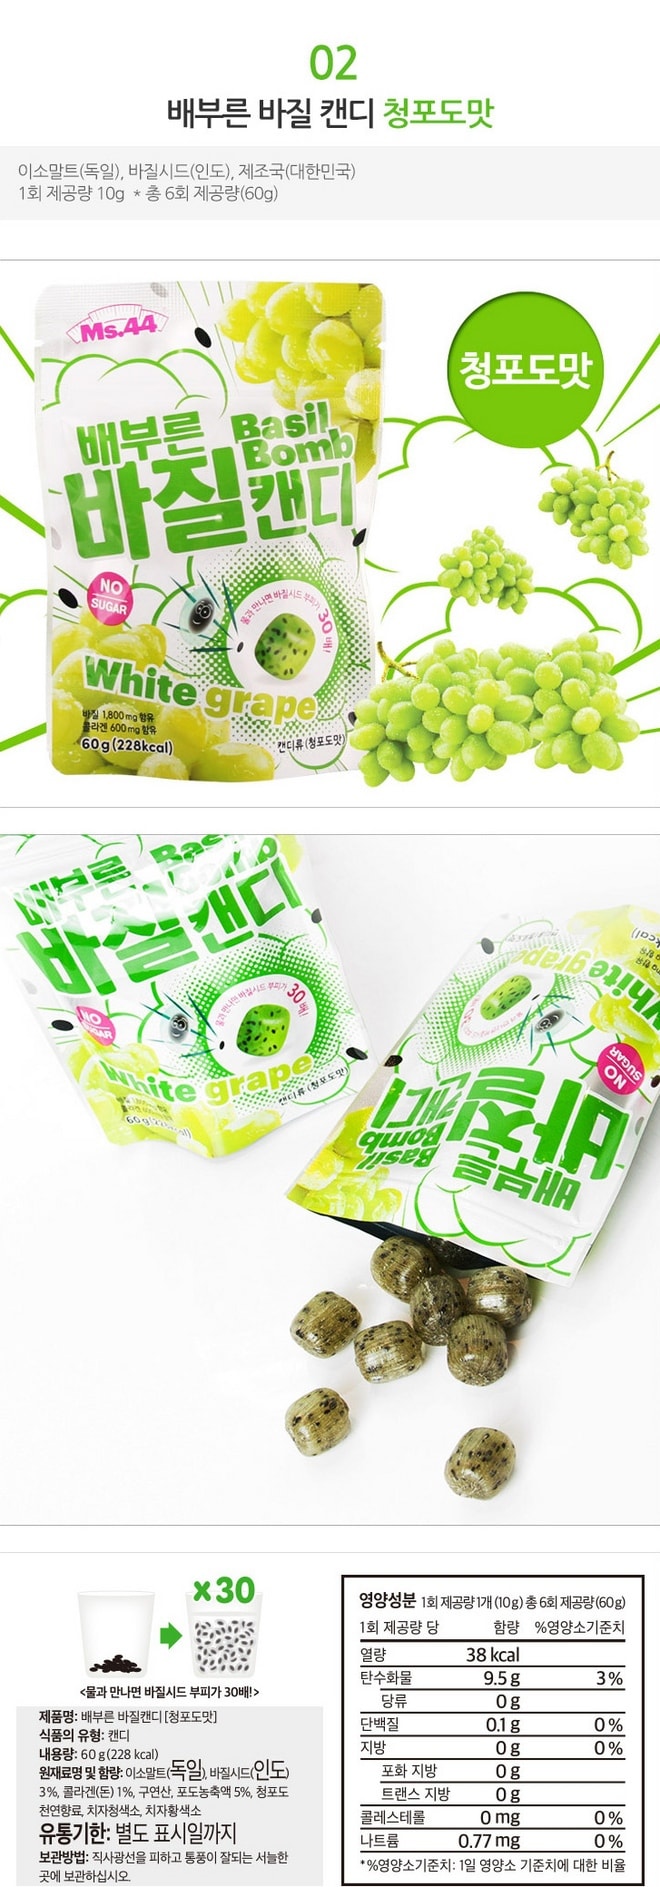 韩国MS.44 罗勒糖 水果味饱腹快瘦糖果 葡萄